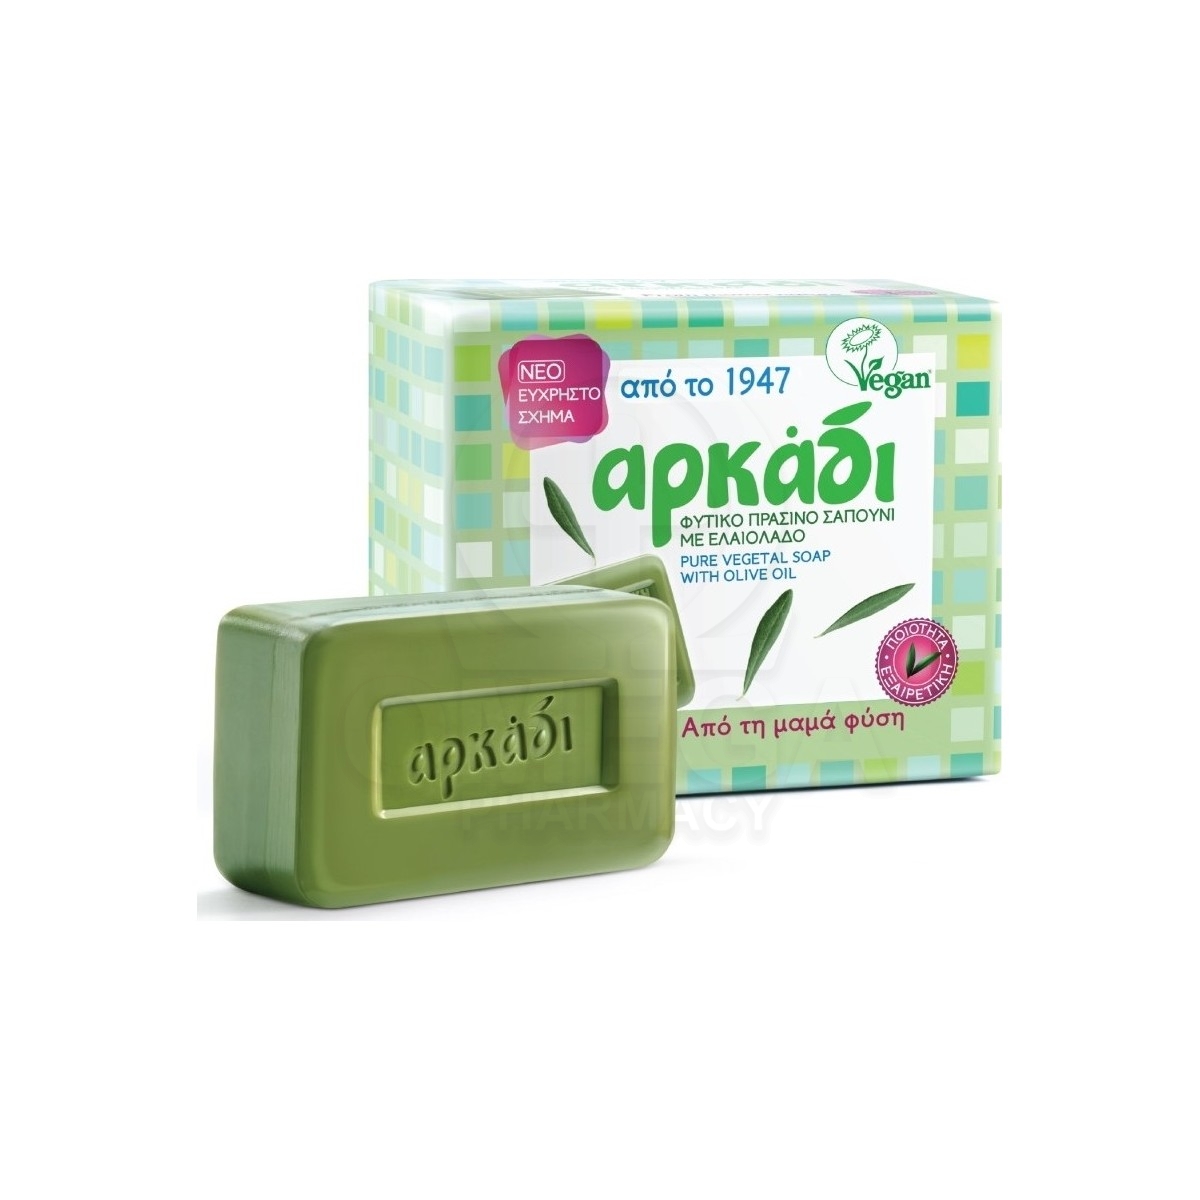 ΑΡΚΑΔΙ Φυτικό Πράσινο Σαπούνι με Ελαιόλαδο 3 + 1 ΔΩΡΟ 150gr